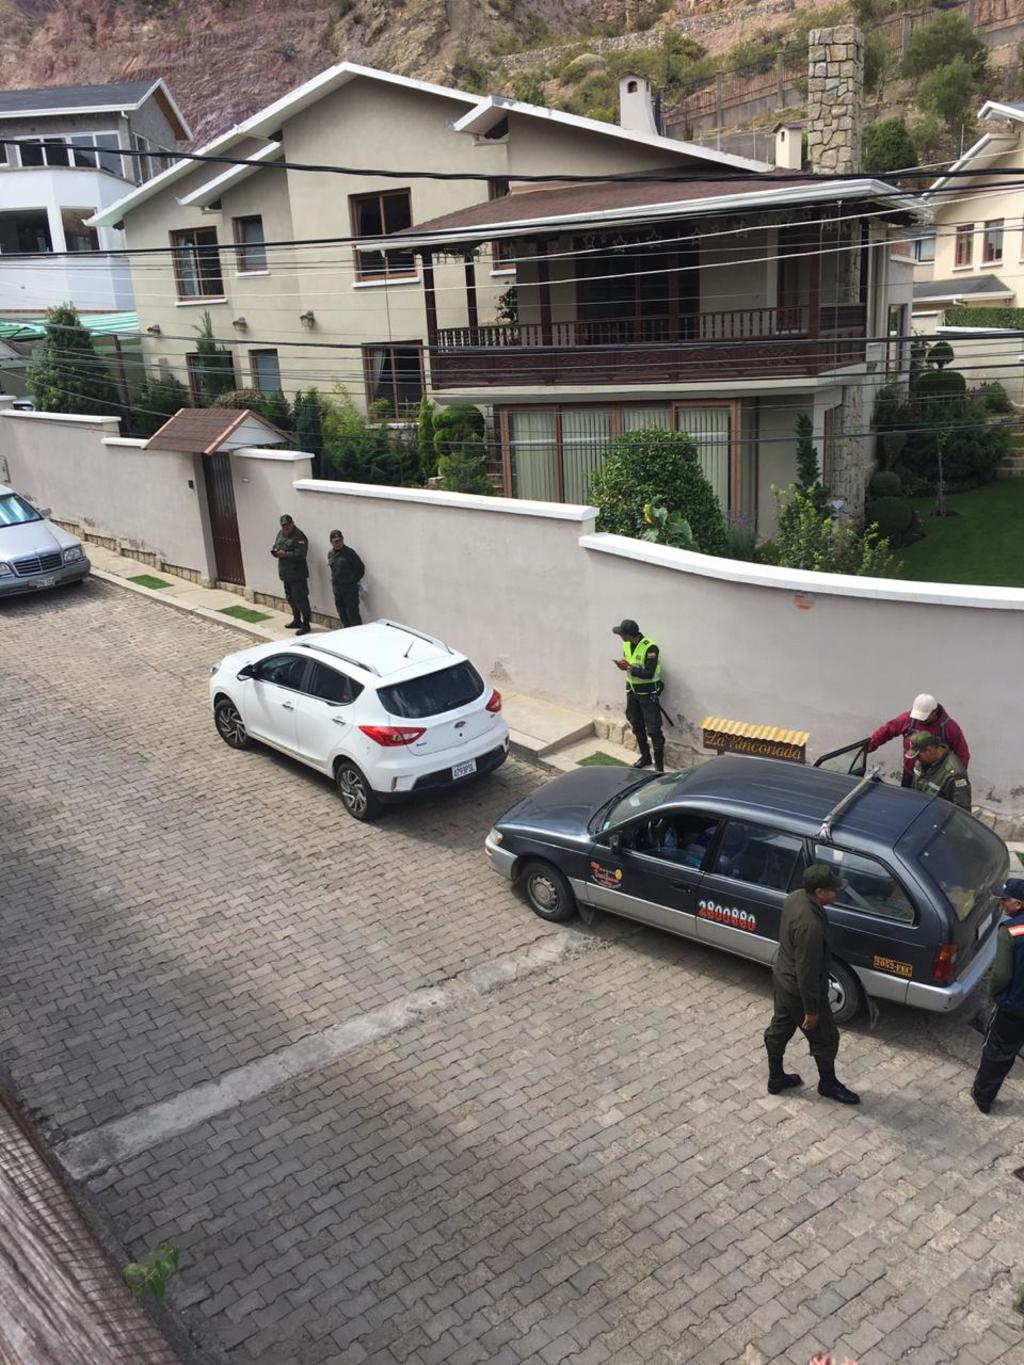 Maximiliano Reyes, subsecretario de Relaciones Exteriores para América Latina y el Caribe, denunció que esta mañana arribaron cerca de 50 policías y militares a la embajada de México en Bolivia en 10 vehículos. (TWITTER)